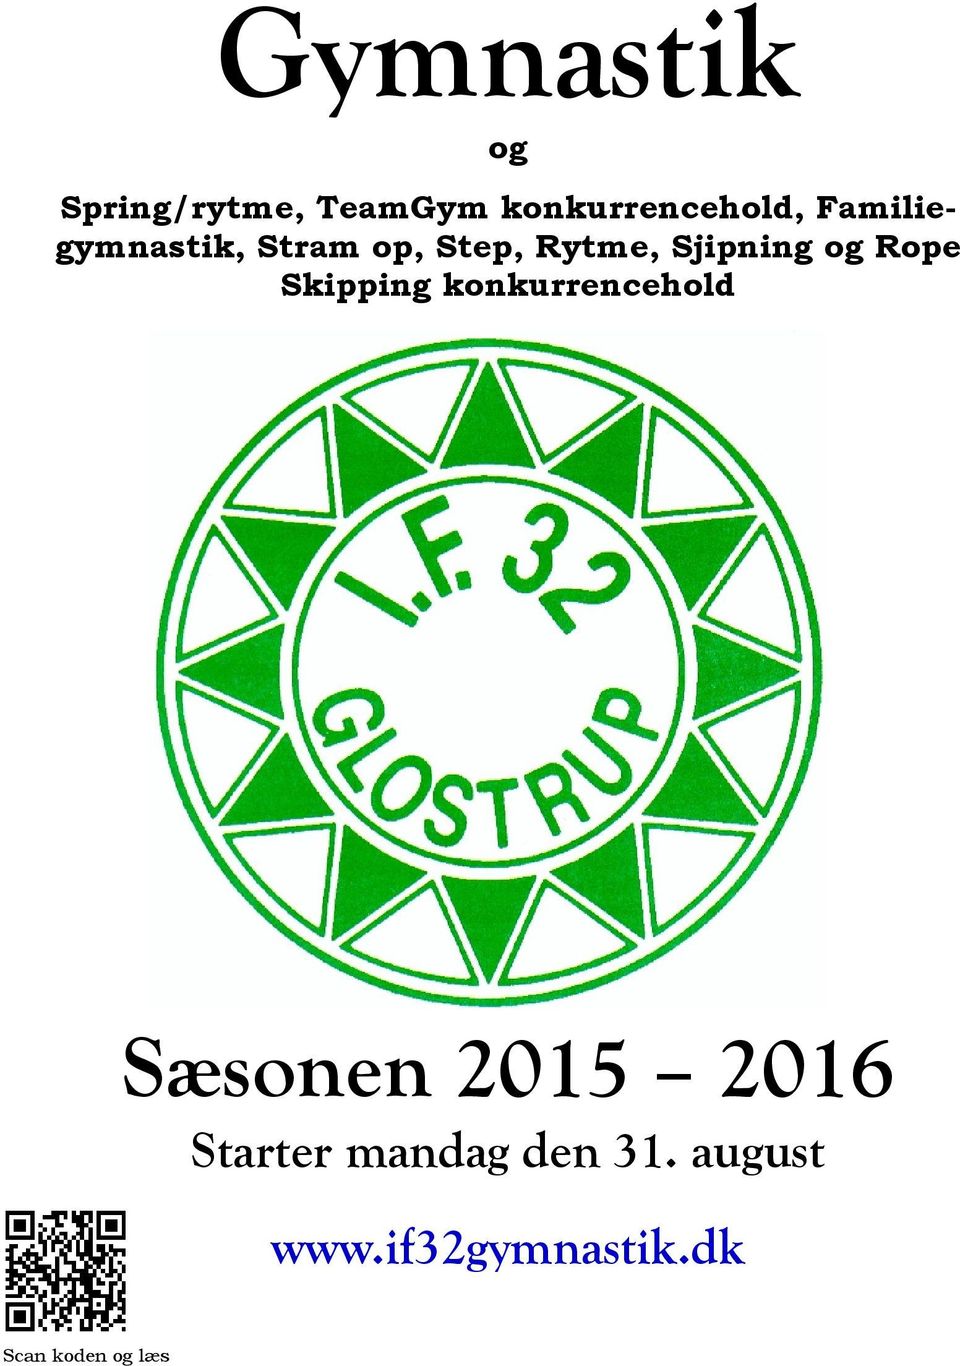 Rope Skipping konkurrencehold Sæsonen 2015 2016 Starter